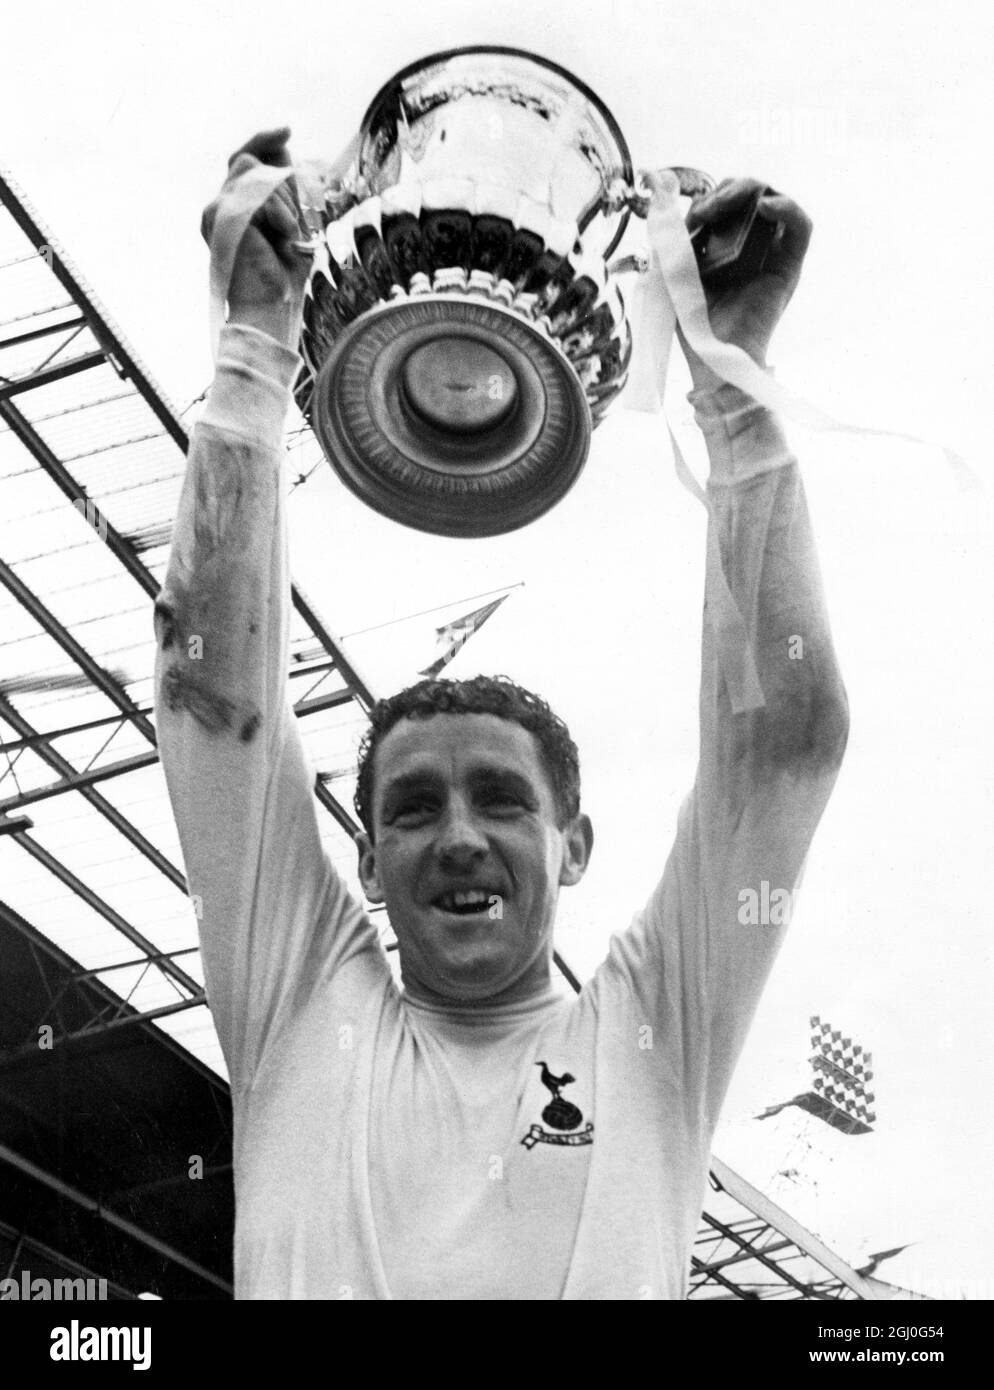 1967 FA Cup Final Tottenham Hotspur gegen den Kapitän der Chelsea Spurs, Dave Mackay, hält den FA Cup hoch, nachdem sein Team Chelsea 2-1 in Wembley geschlagen hatte. Mai 1967 Stockfoto